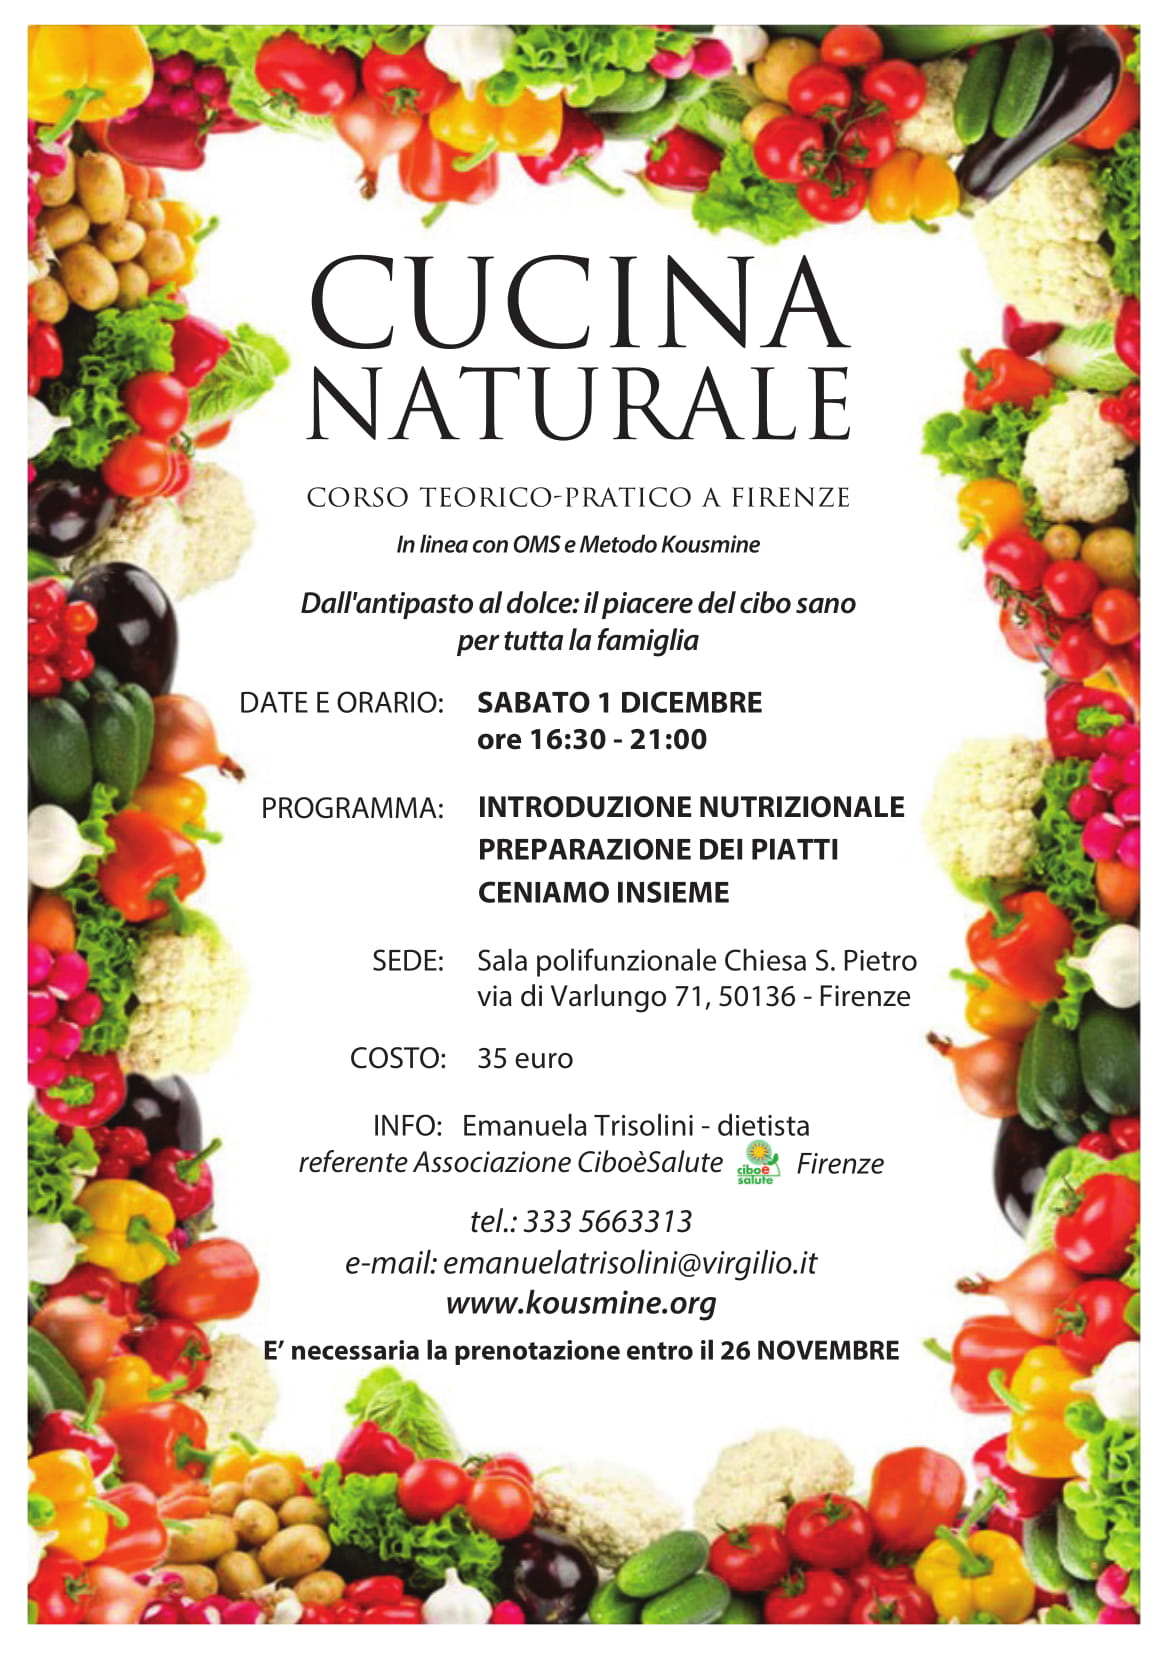 Cucina naturale corso teorico pratico Firenze